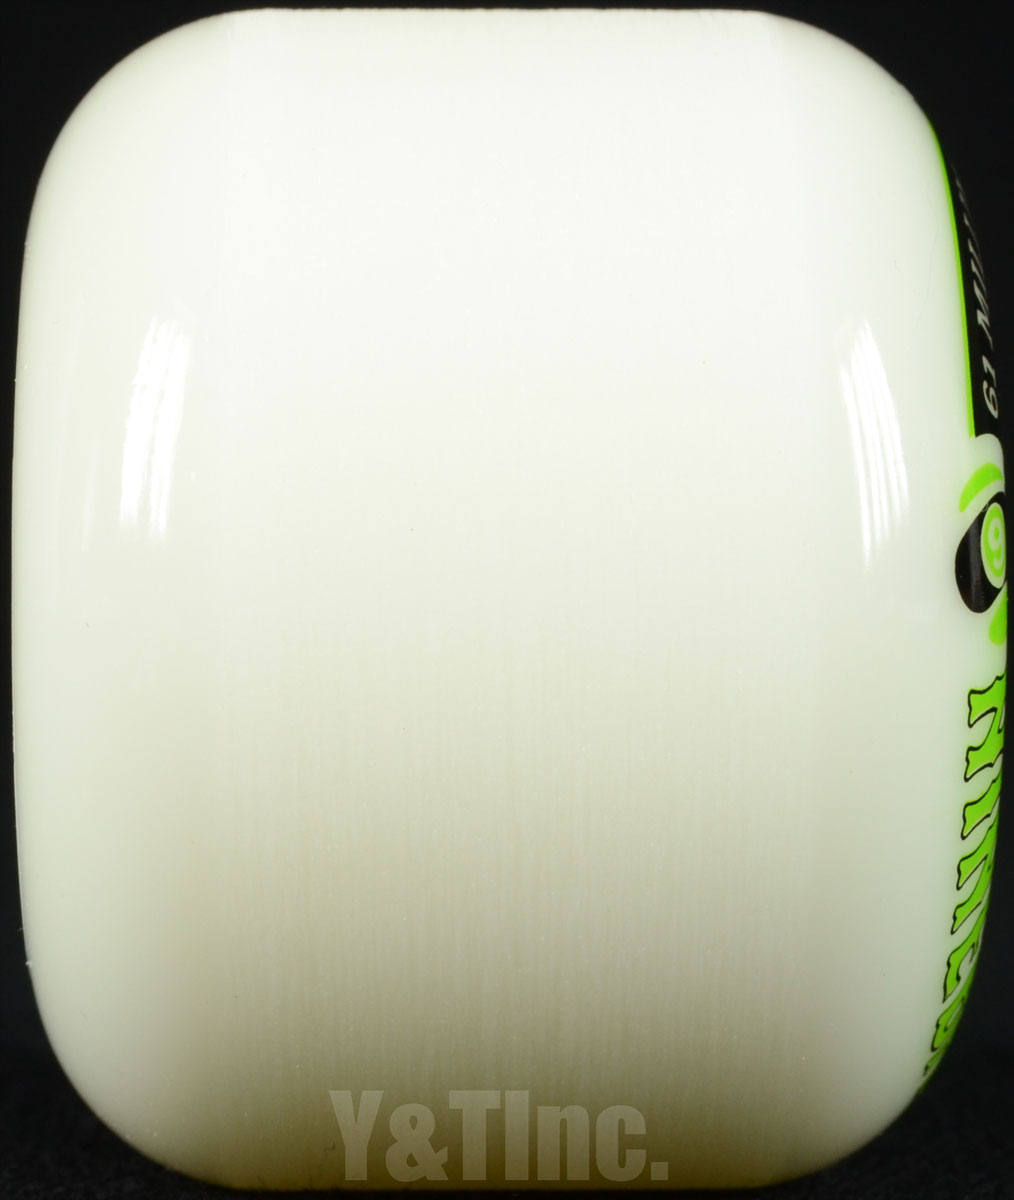 セクターナイン ナインボール 61mm 78a ホワイト / ウィール / ウィール / スケートボード用 / エクストリーム